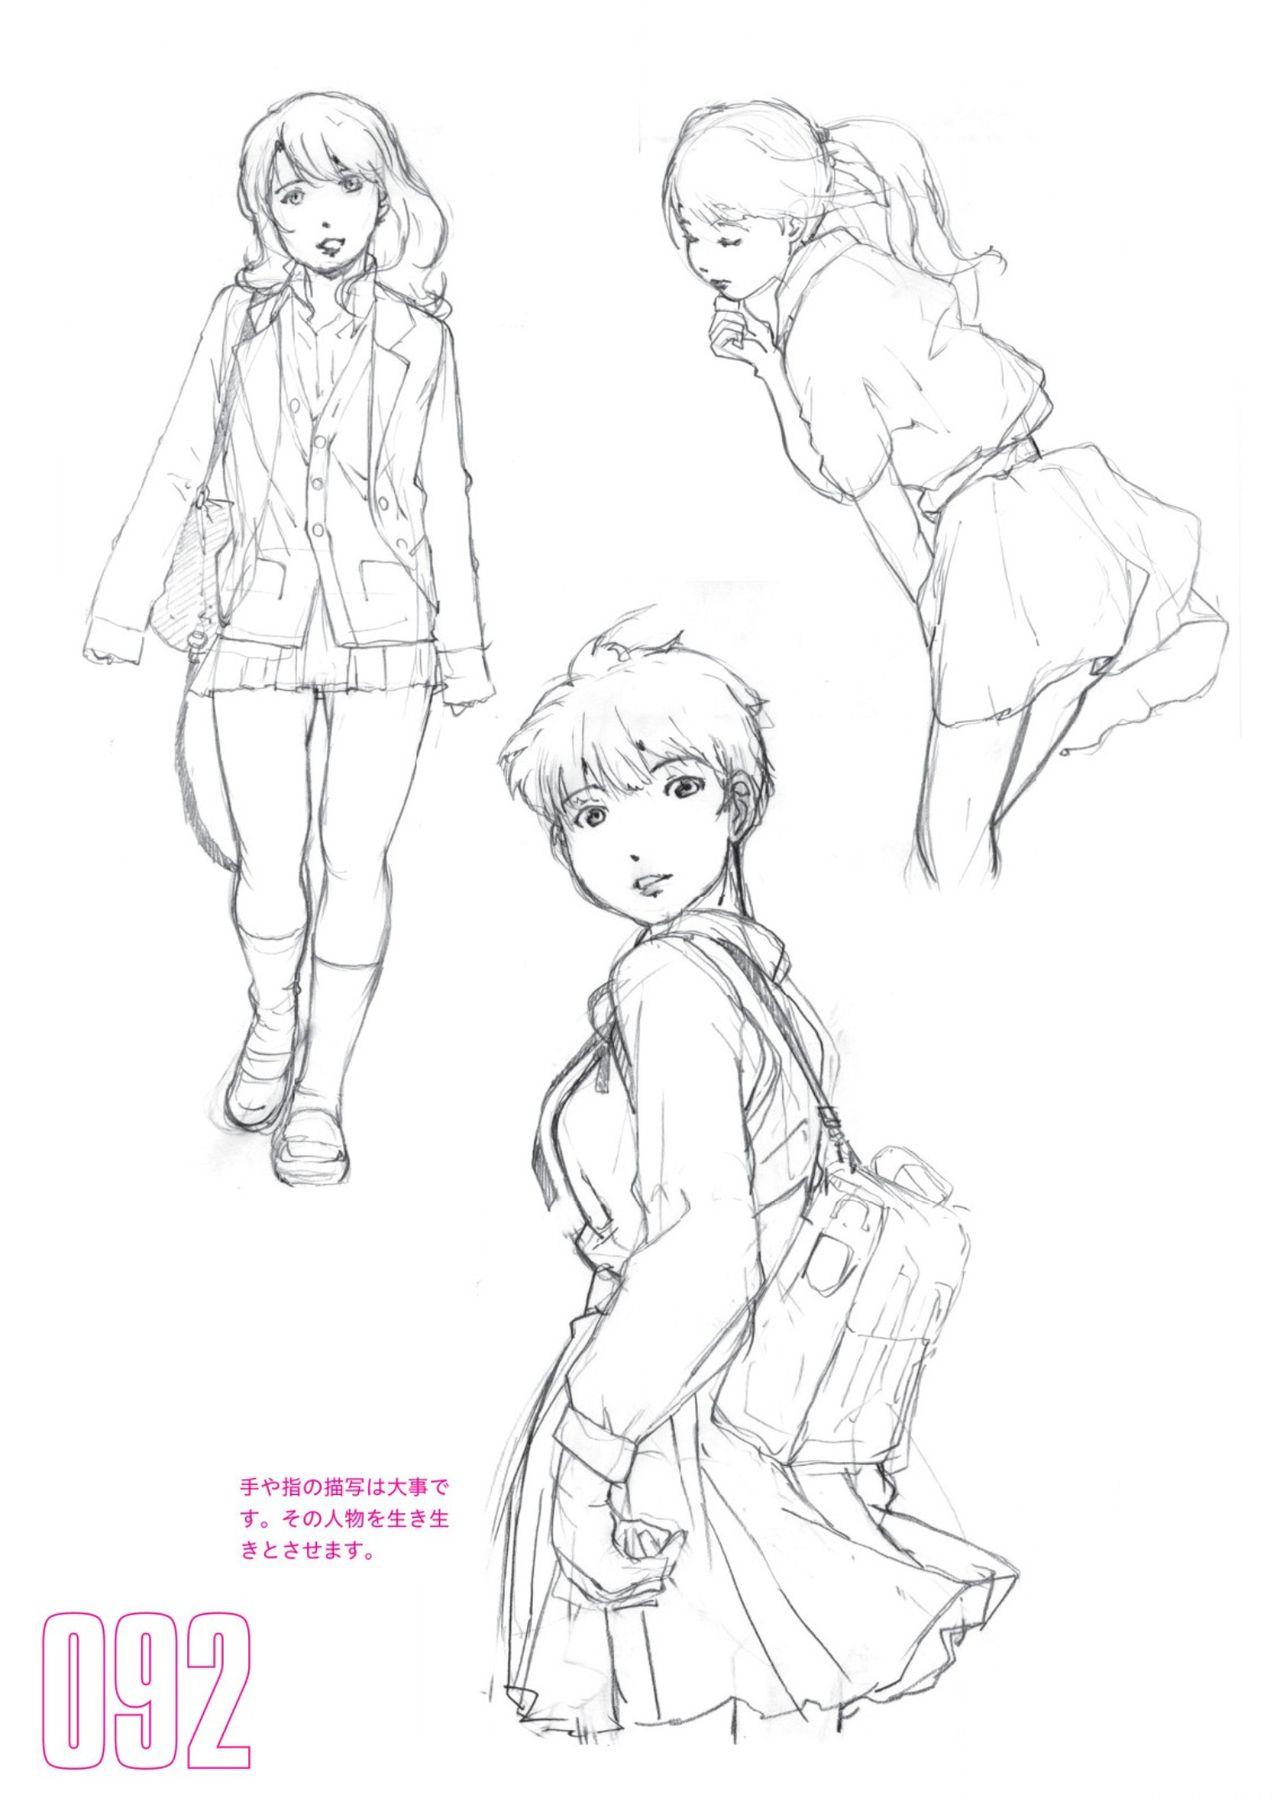 Toru Yoshida Tips for drawing women in 10 minutes 270 Uniforms 93